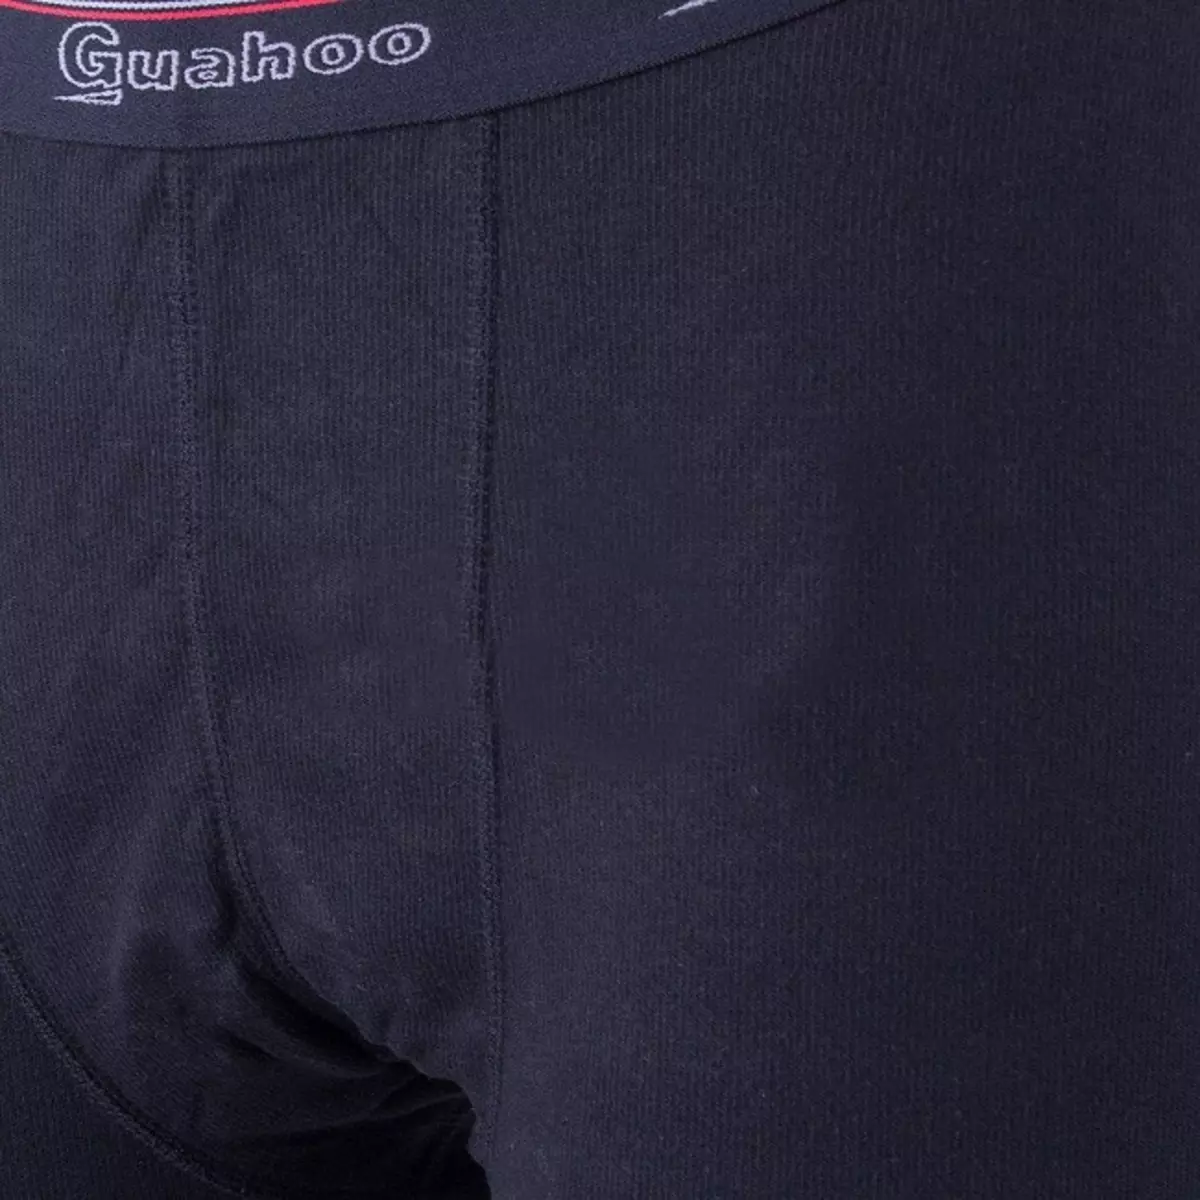 Thermyske underwear Guahoo: Kies de thermokoppels, manlik, froulike en bern fan 'e bern foar kâld waar. Skaaimerken fan modellen en resinsjes 1424_42